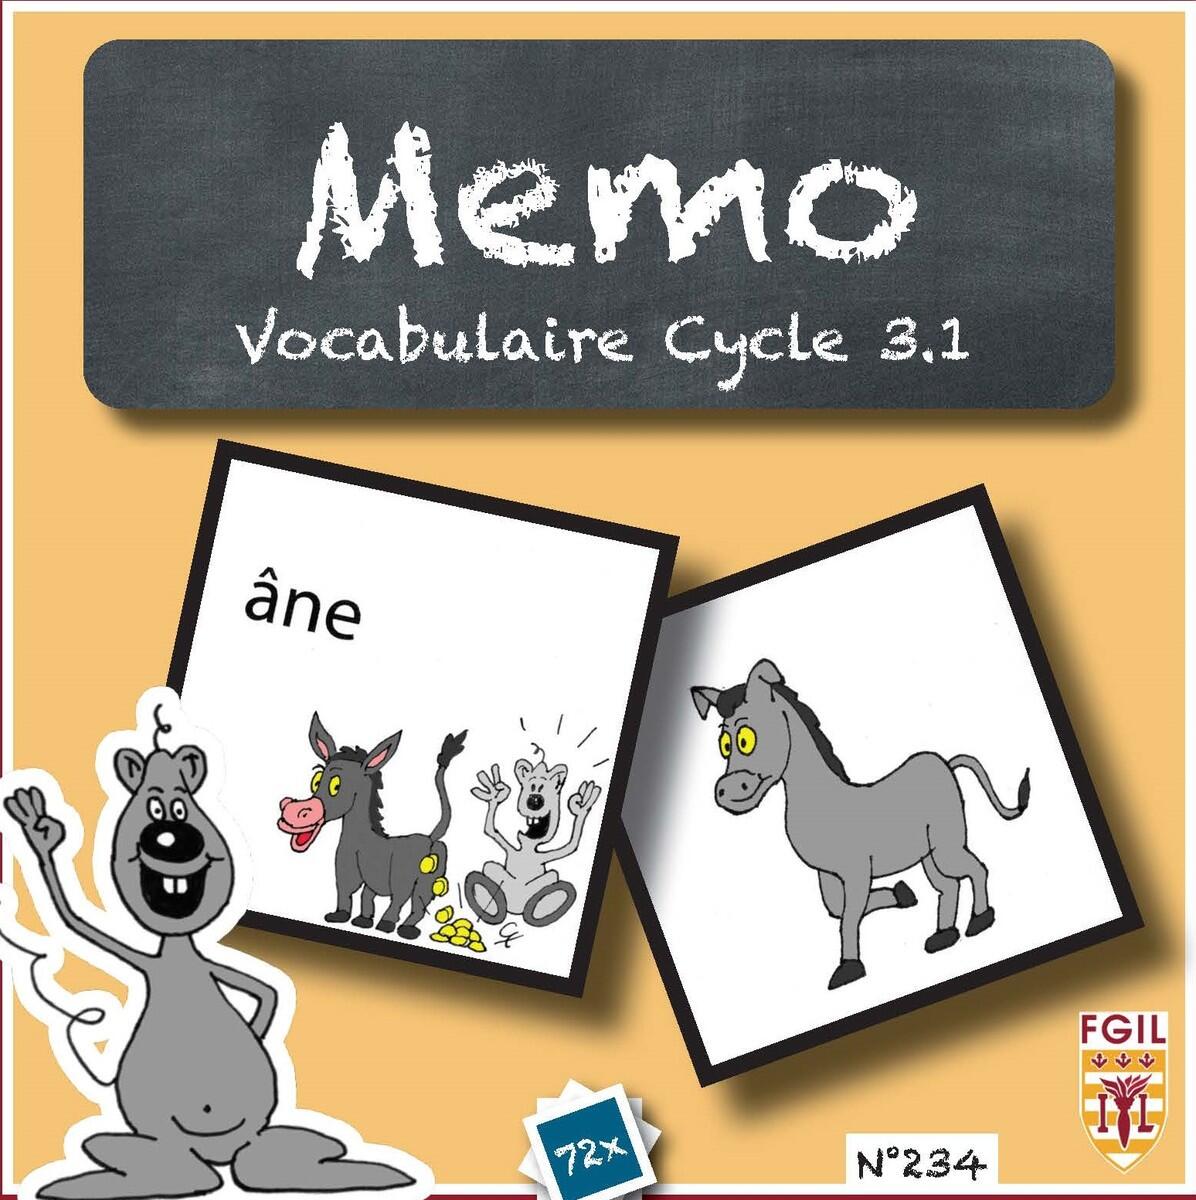 234: Memo Vocabulaire Cycle 3.1